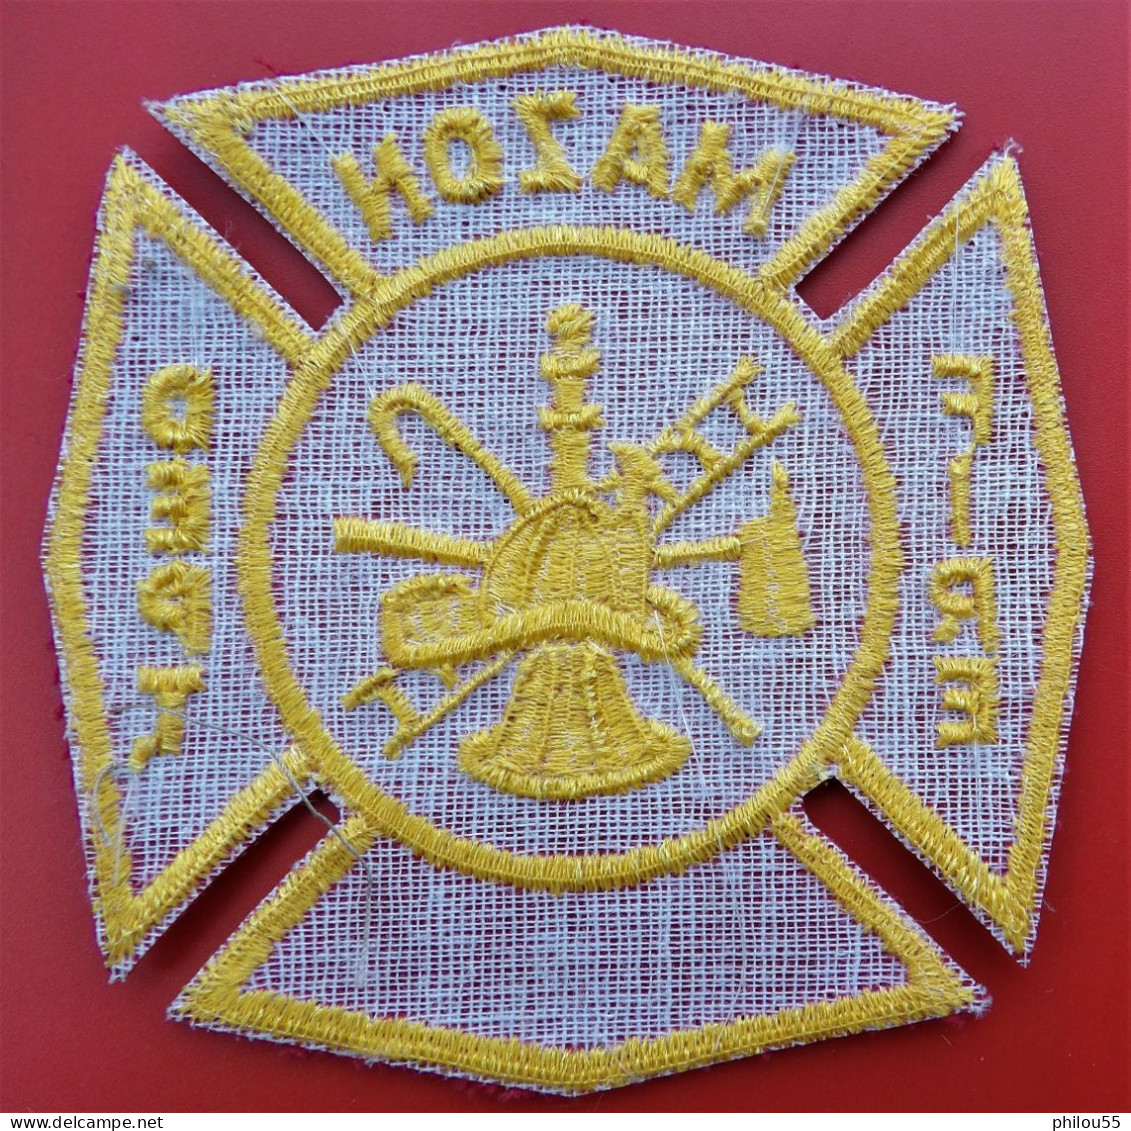 Insigne Tissu POMPIER USA MAZON FIRE DEPARTEMENT - Pompiers